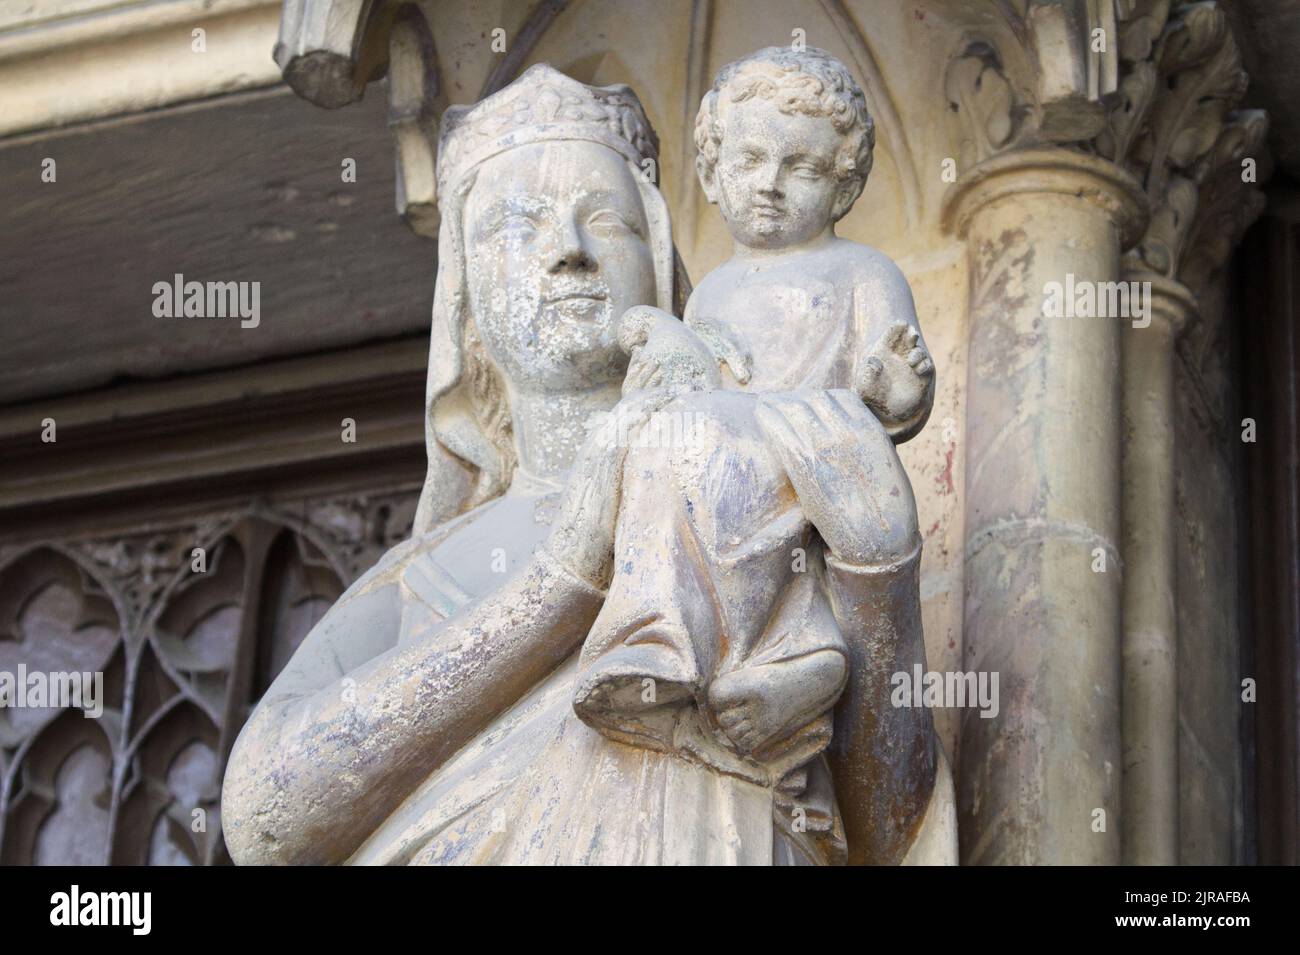 Virgin Mary with Child - Porch of Saint-Germain l’Auxerrois, Place du Louvre, Paris Stock Photo